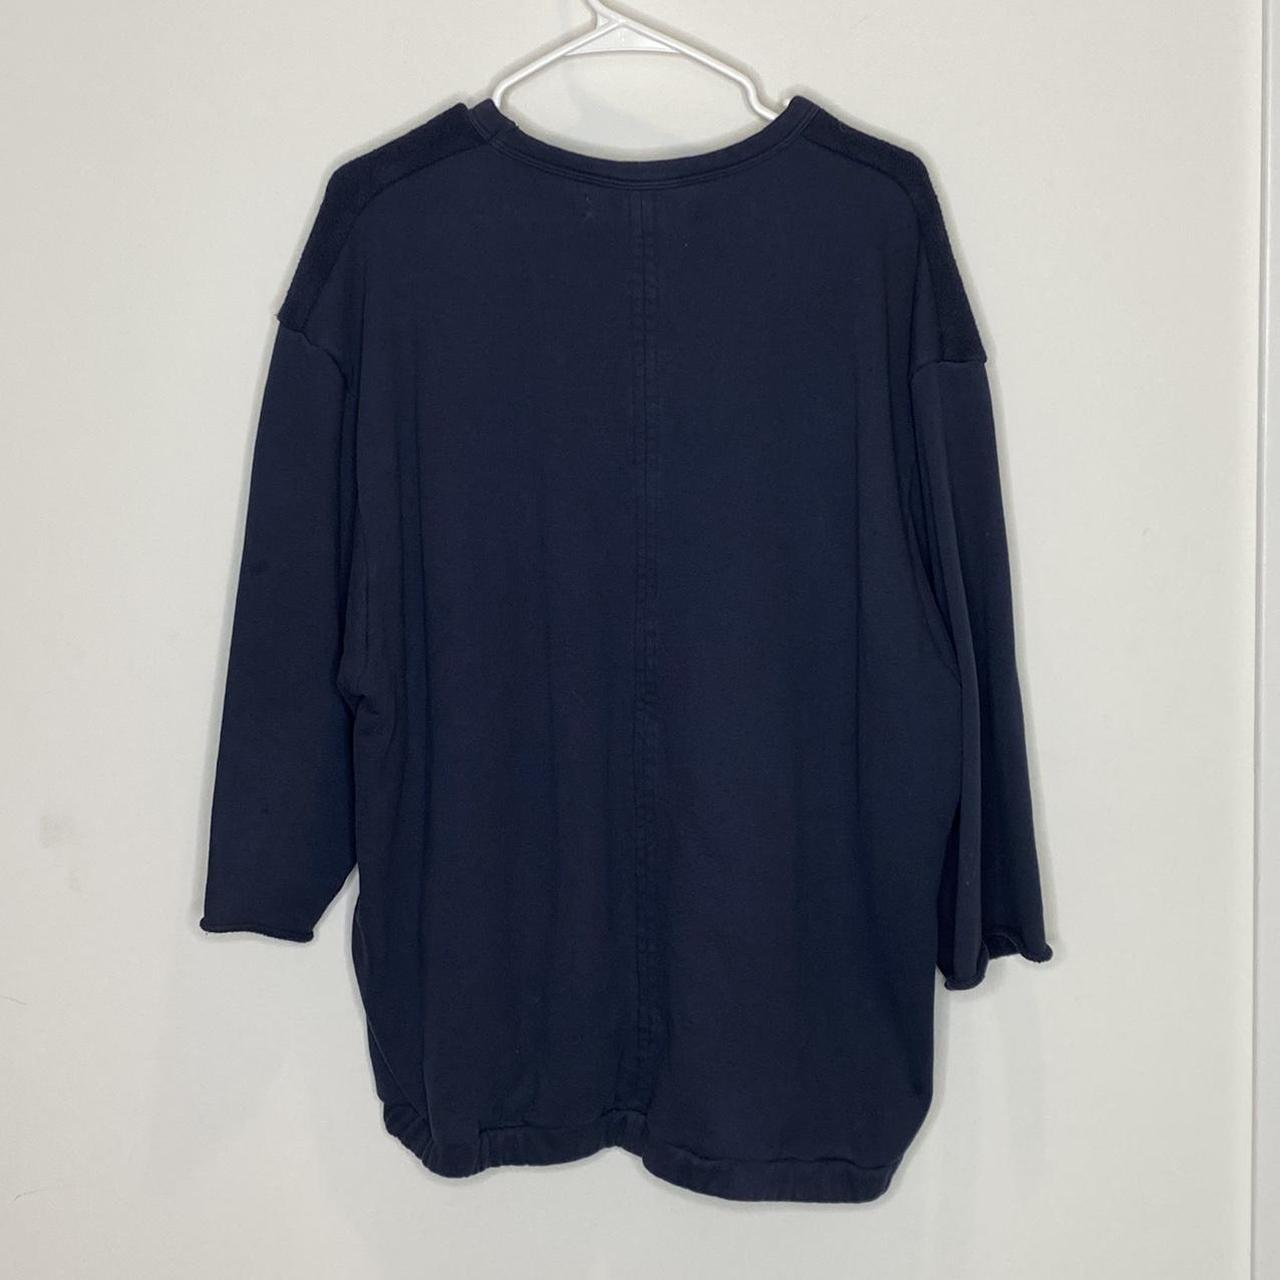 Product Image 3 - #mrcompletely #sweatshirt